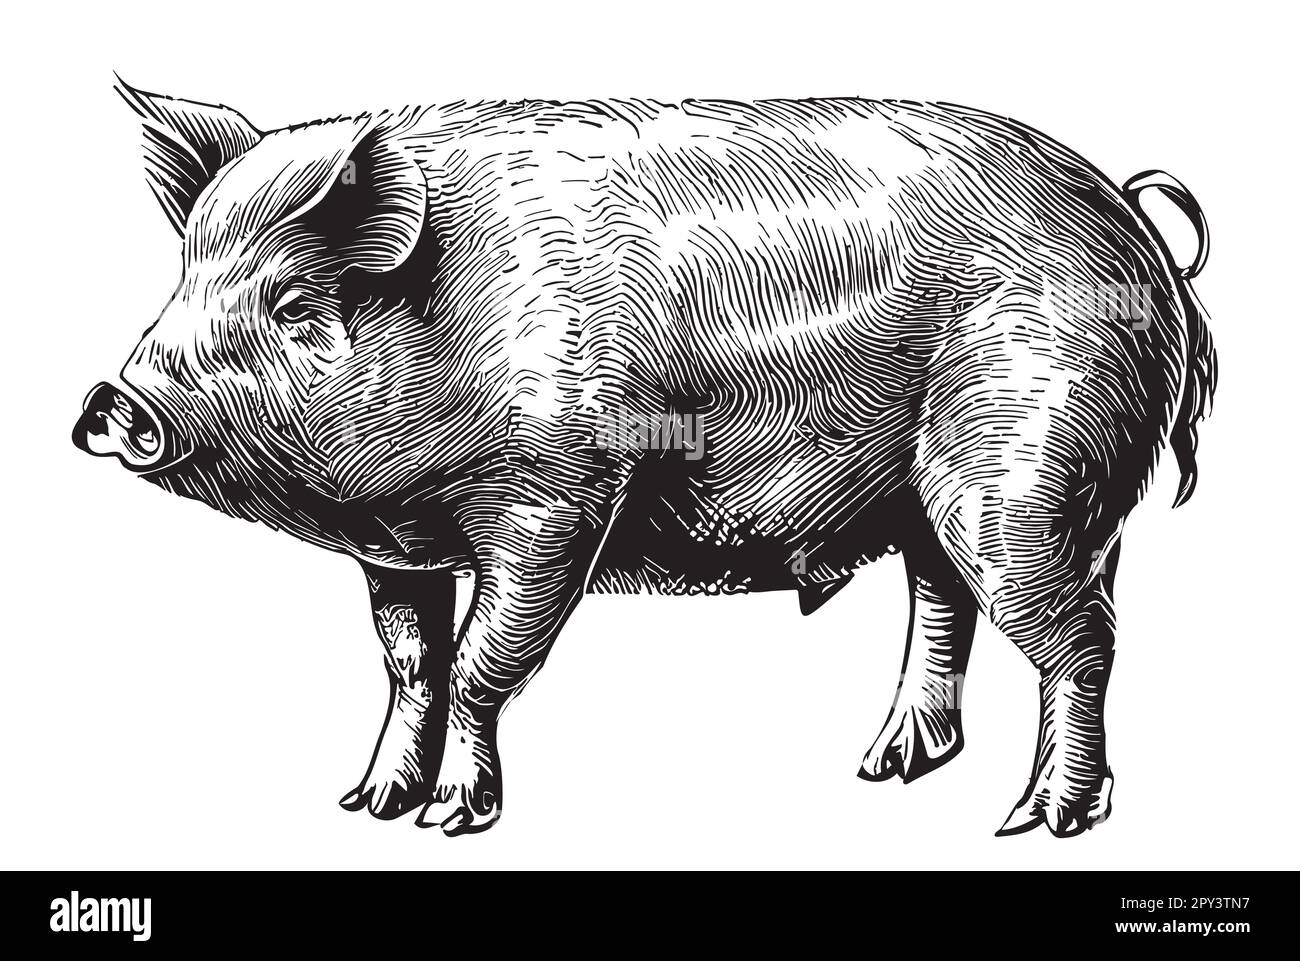 Dessin de cochon dessiné à la main dans l'illustration de style Doodle Illustration de Vecteur